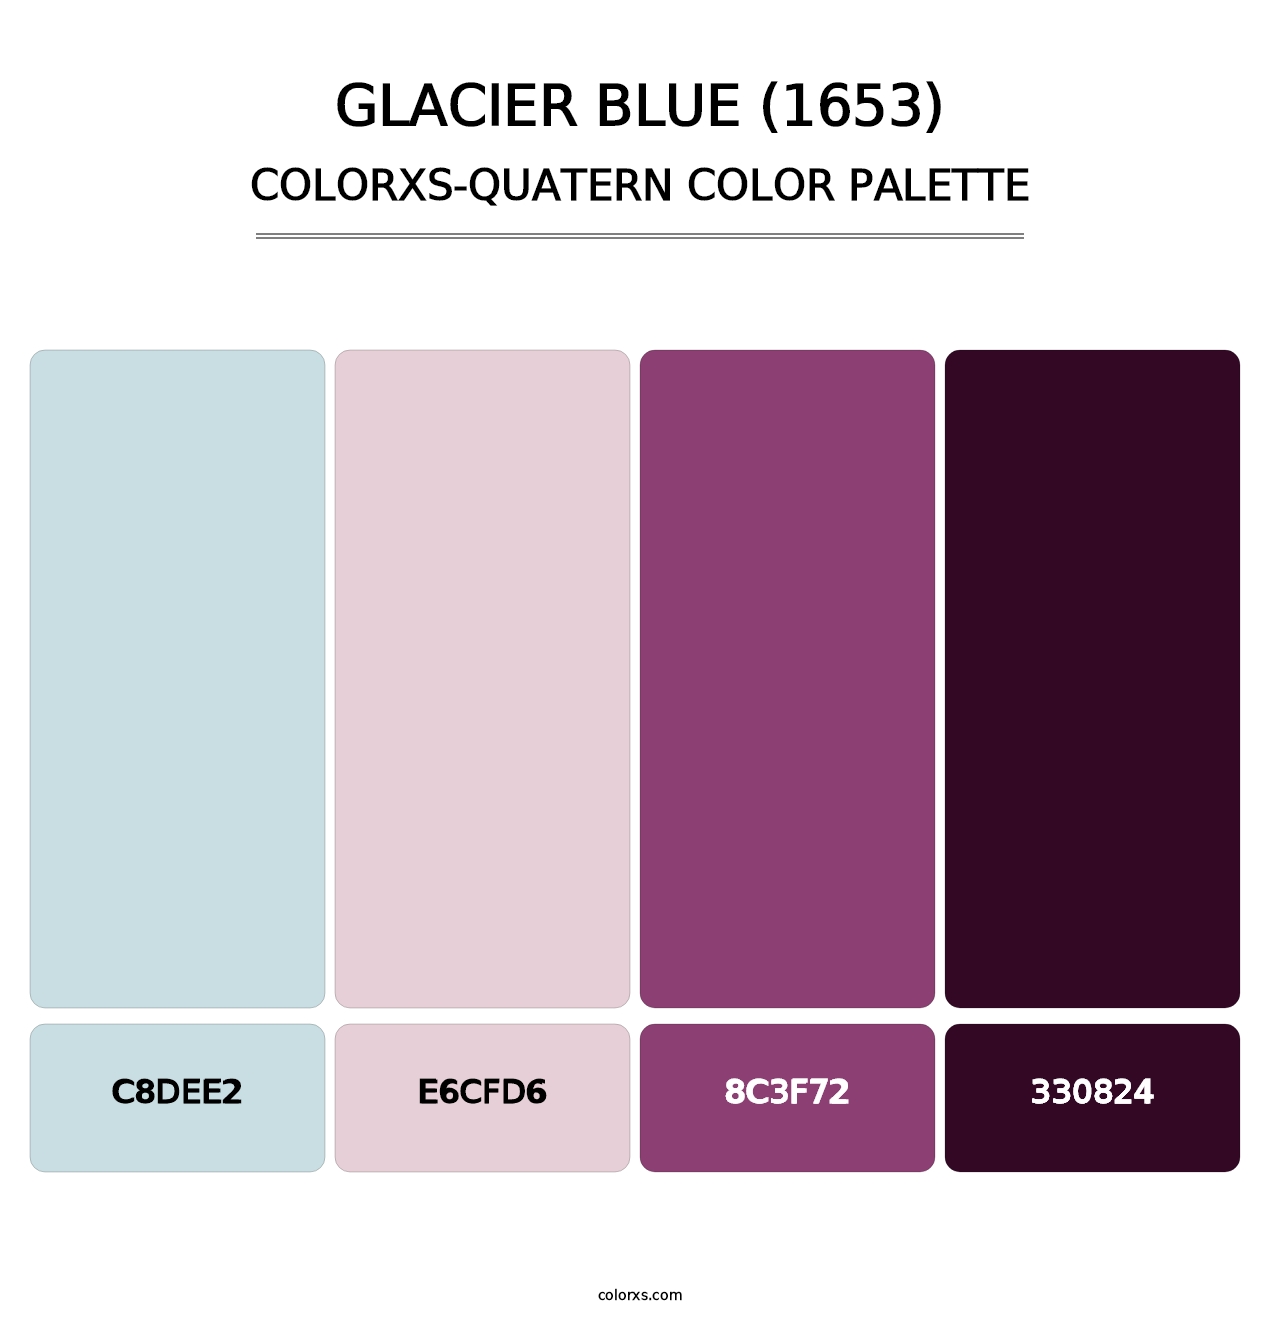 Glacier Blue (1653) - Colorxs Quatern Palette